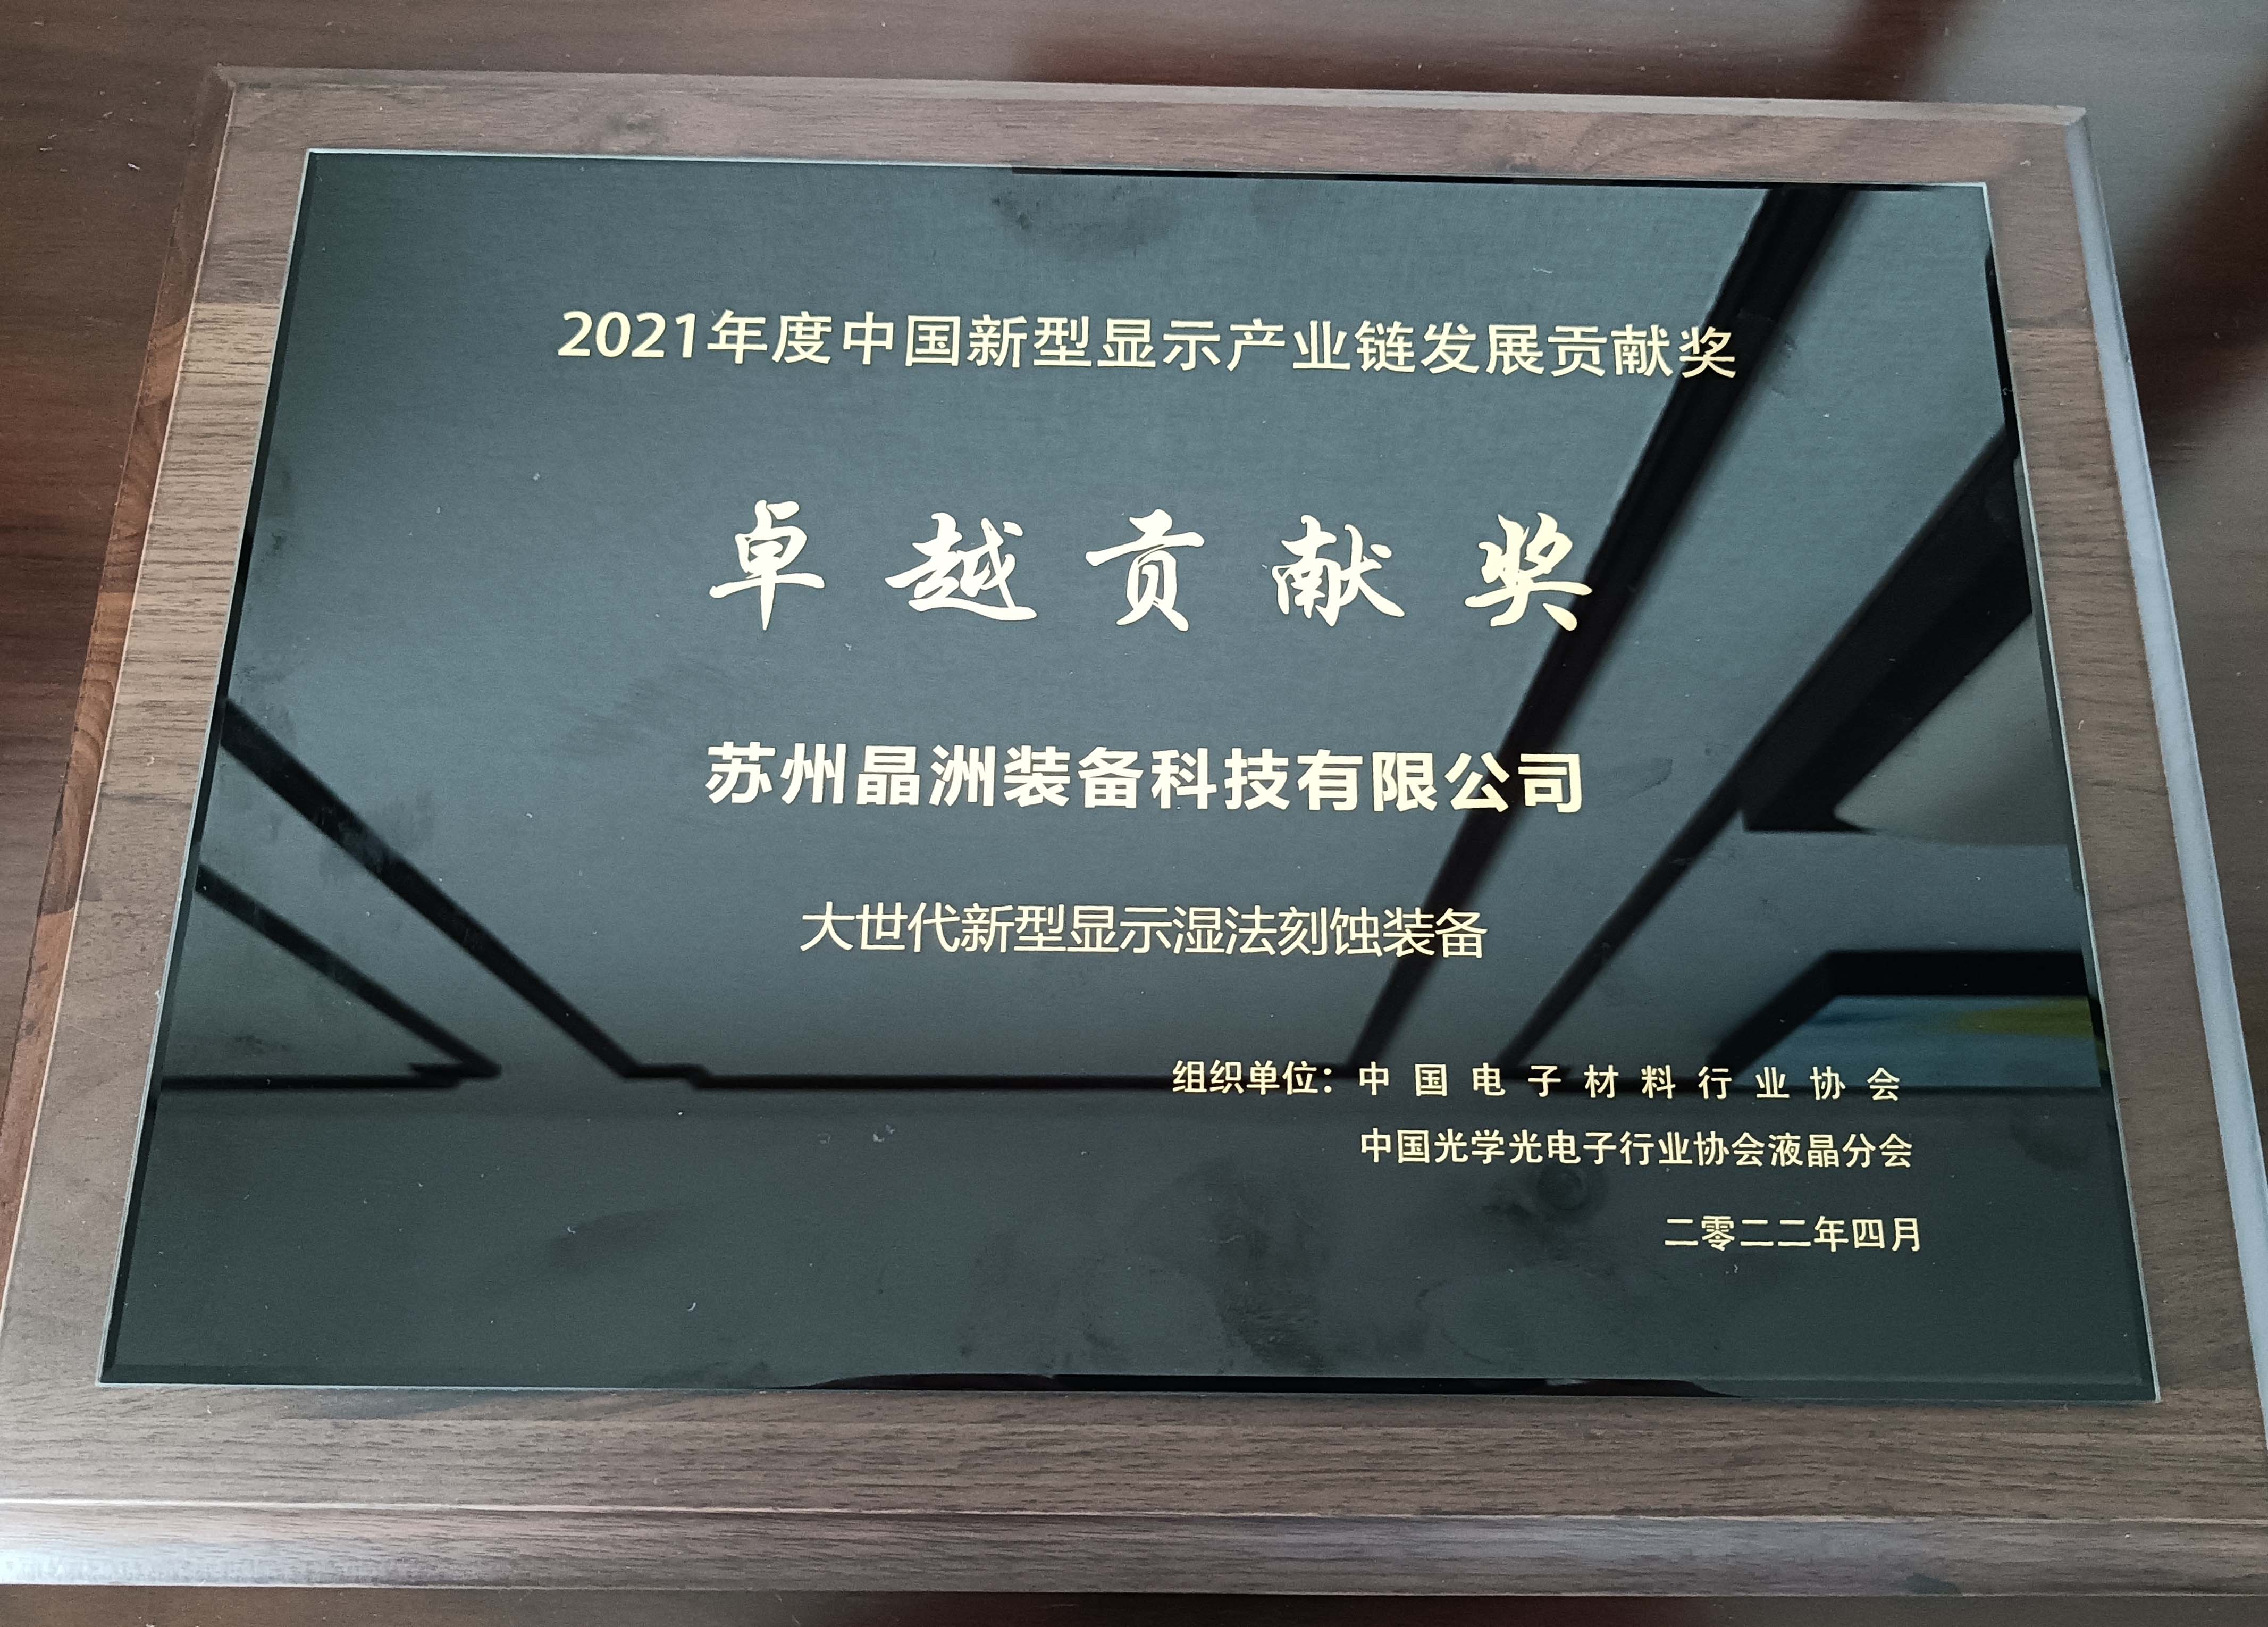 南宫ng28装备荣获2021年度中国新型显示工业链卓越孝敬奖并宣布主题演讲